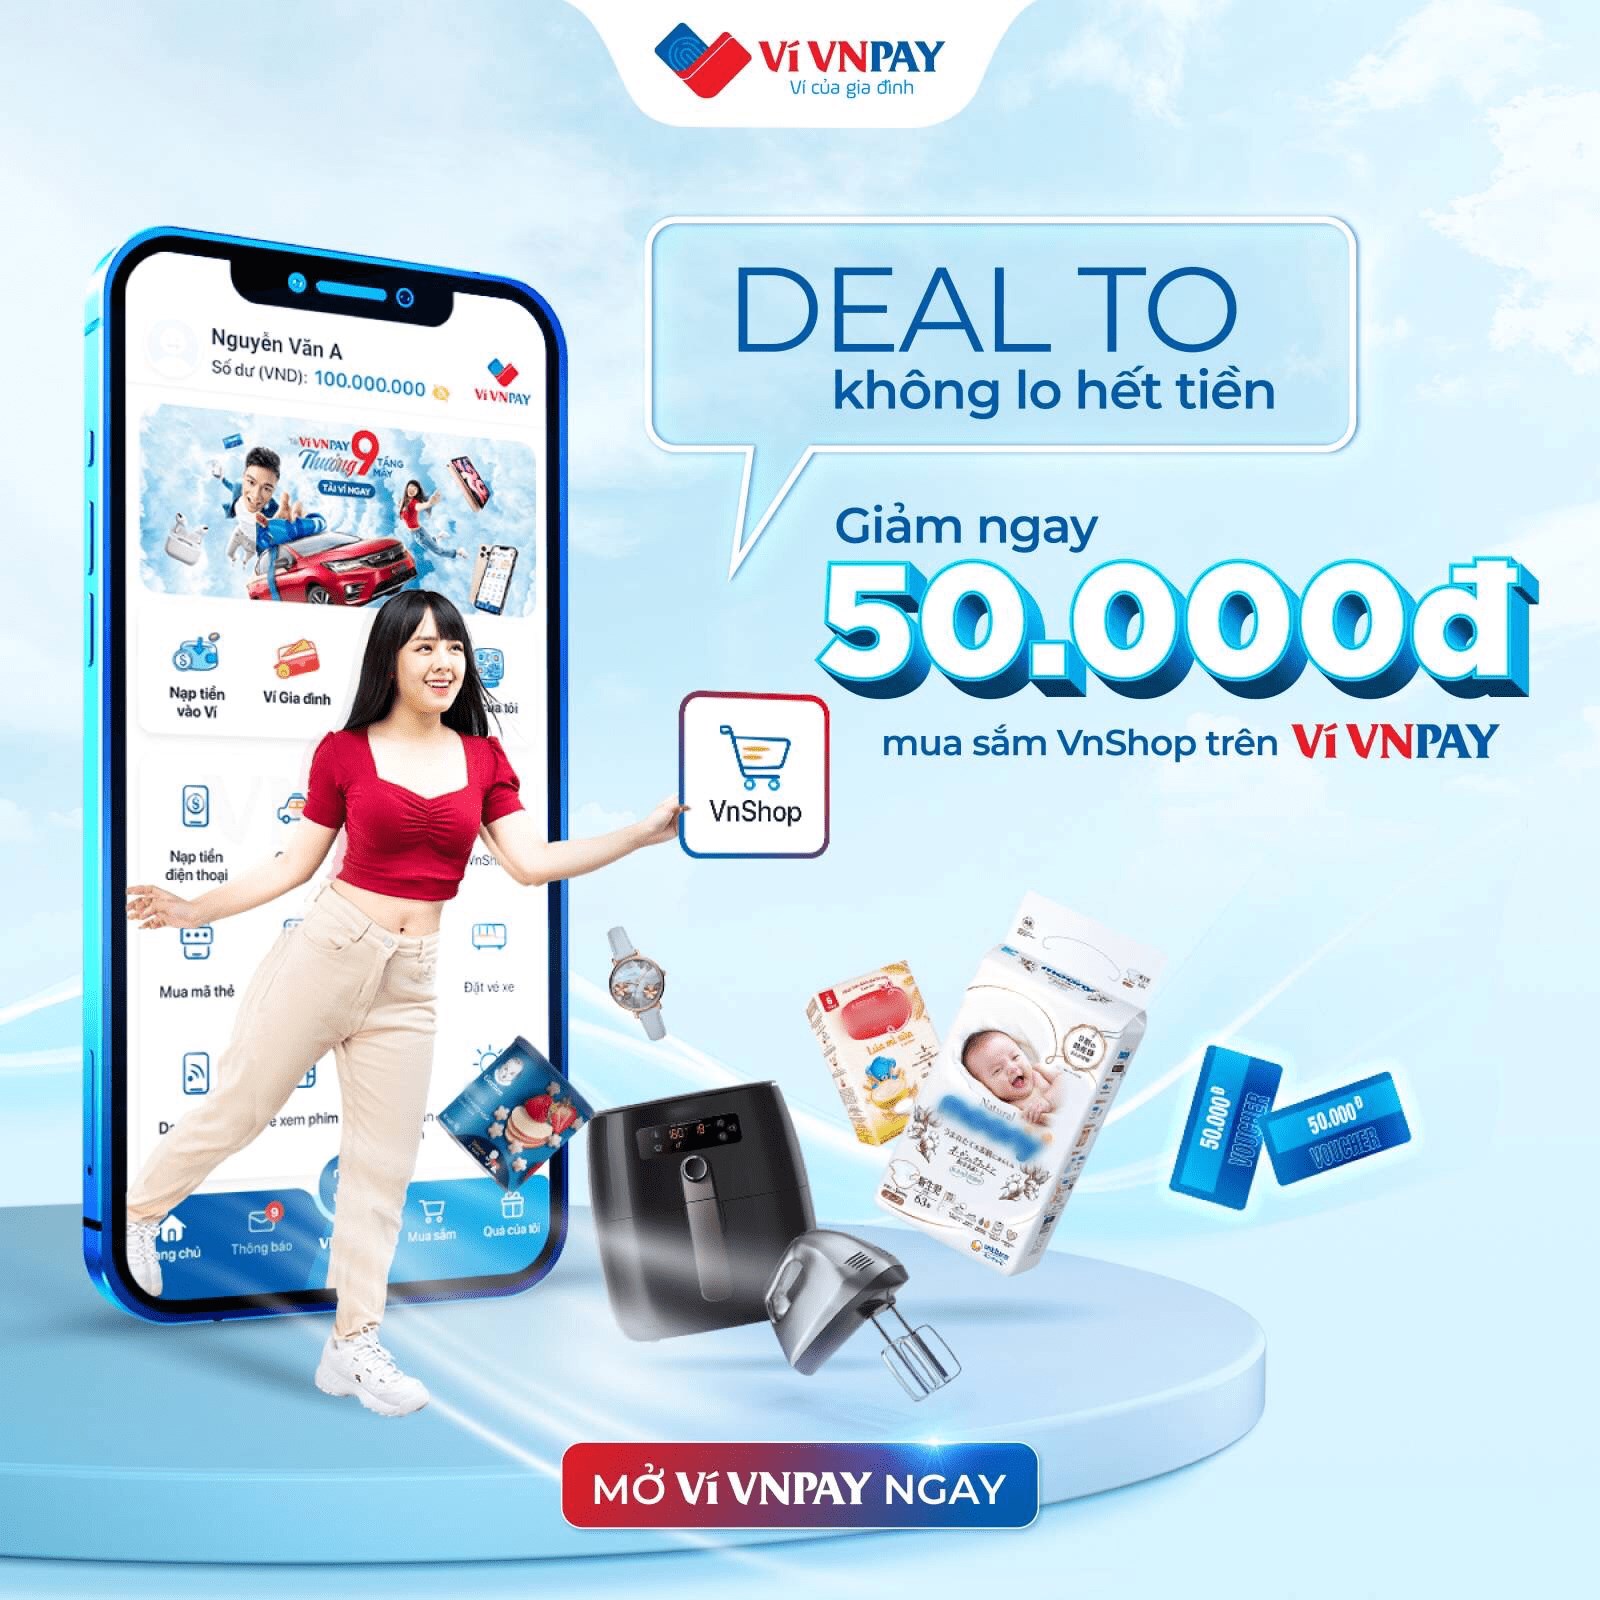 Flash Sale 11/11: Giảm 50.000đ cho hàng loạt đơn hàng online VnShop trên ví VNPAY